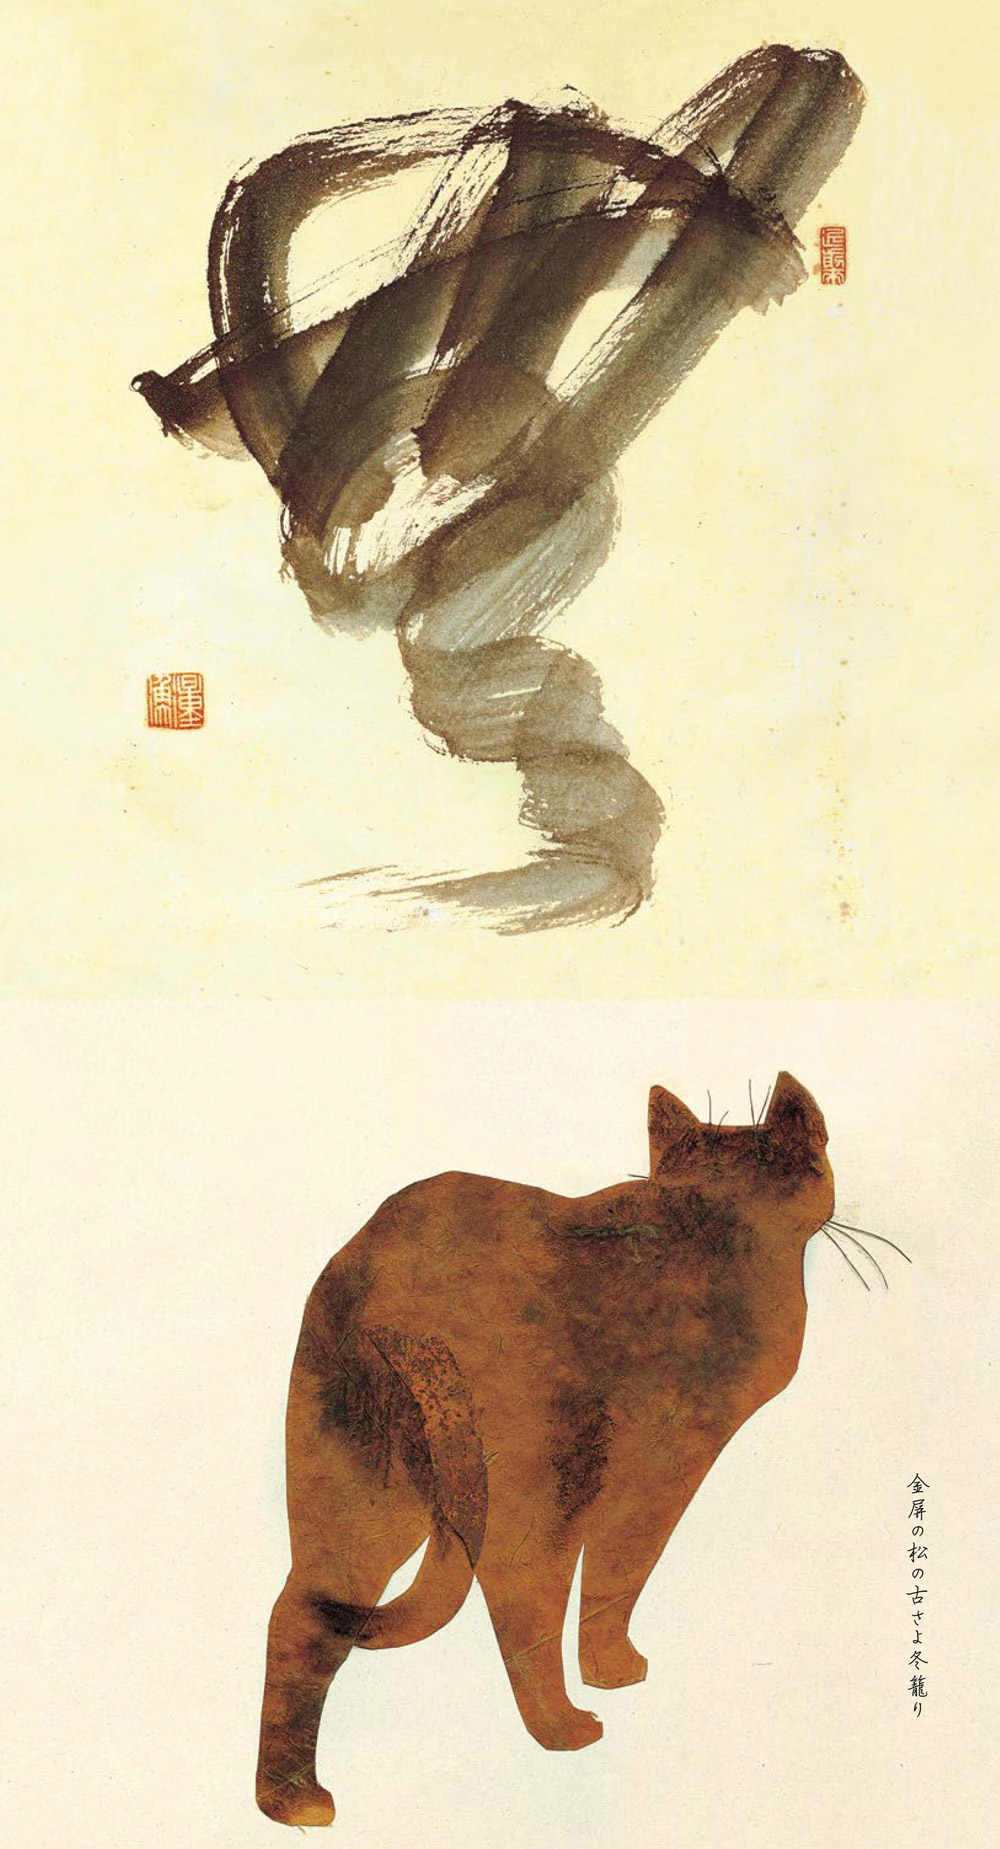 מגזין מקו ועד תרבות / מיזם דיגיטלי ללא צרכי רווח וואבי סאבי, סיפור מסע של חתולה יפנית.<br><br>הסיפור הכל-כך תמים, למראית עין, מצליח לחשוף לעומק תפיסת עולם הנמצאת בבסיס הזן בודהיזם.  